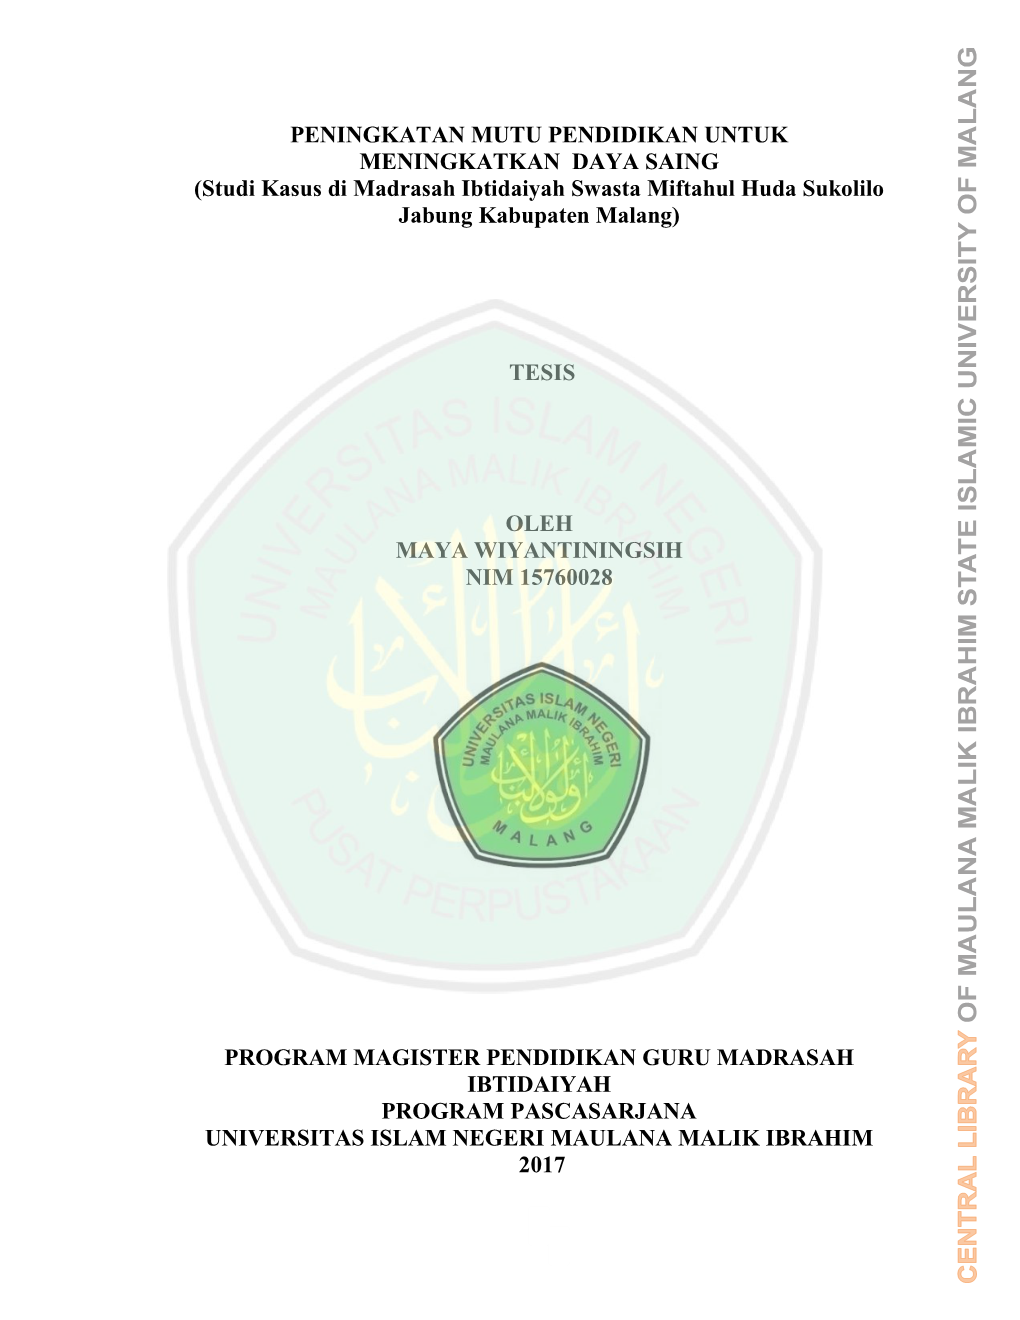 Studi Kasus Di Madrasah Ibtidaiyah Swasta Miftahul Huda Sukolilo Jabung Kabupaten Malang)